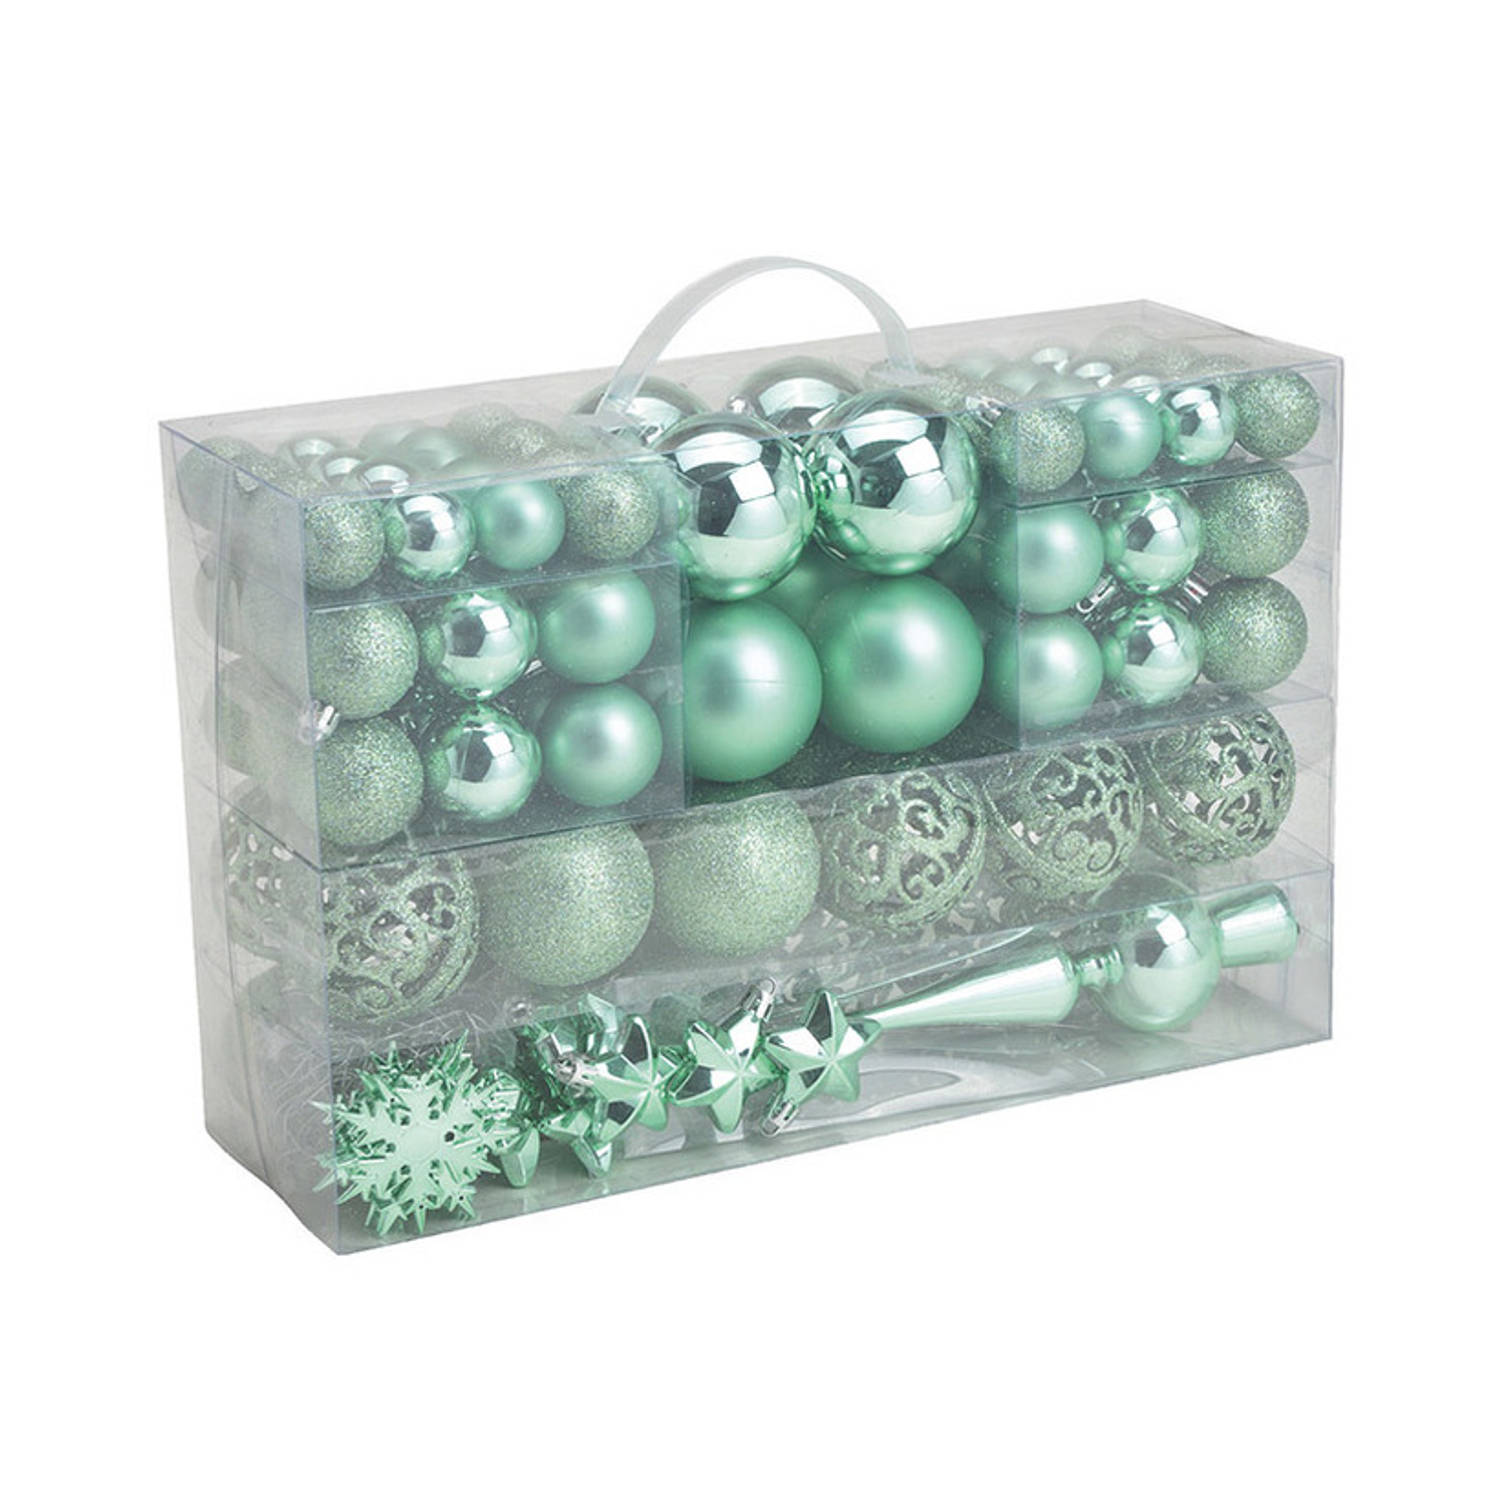 111x stuks kunststof kerstballen mint groen 3, 4 en 6 cm met piek - Kerstbal